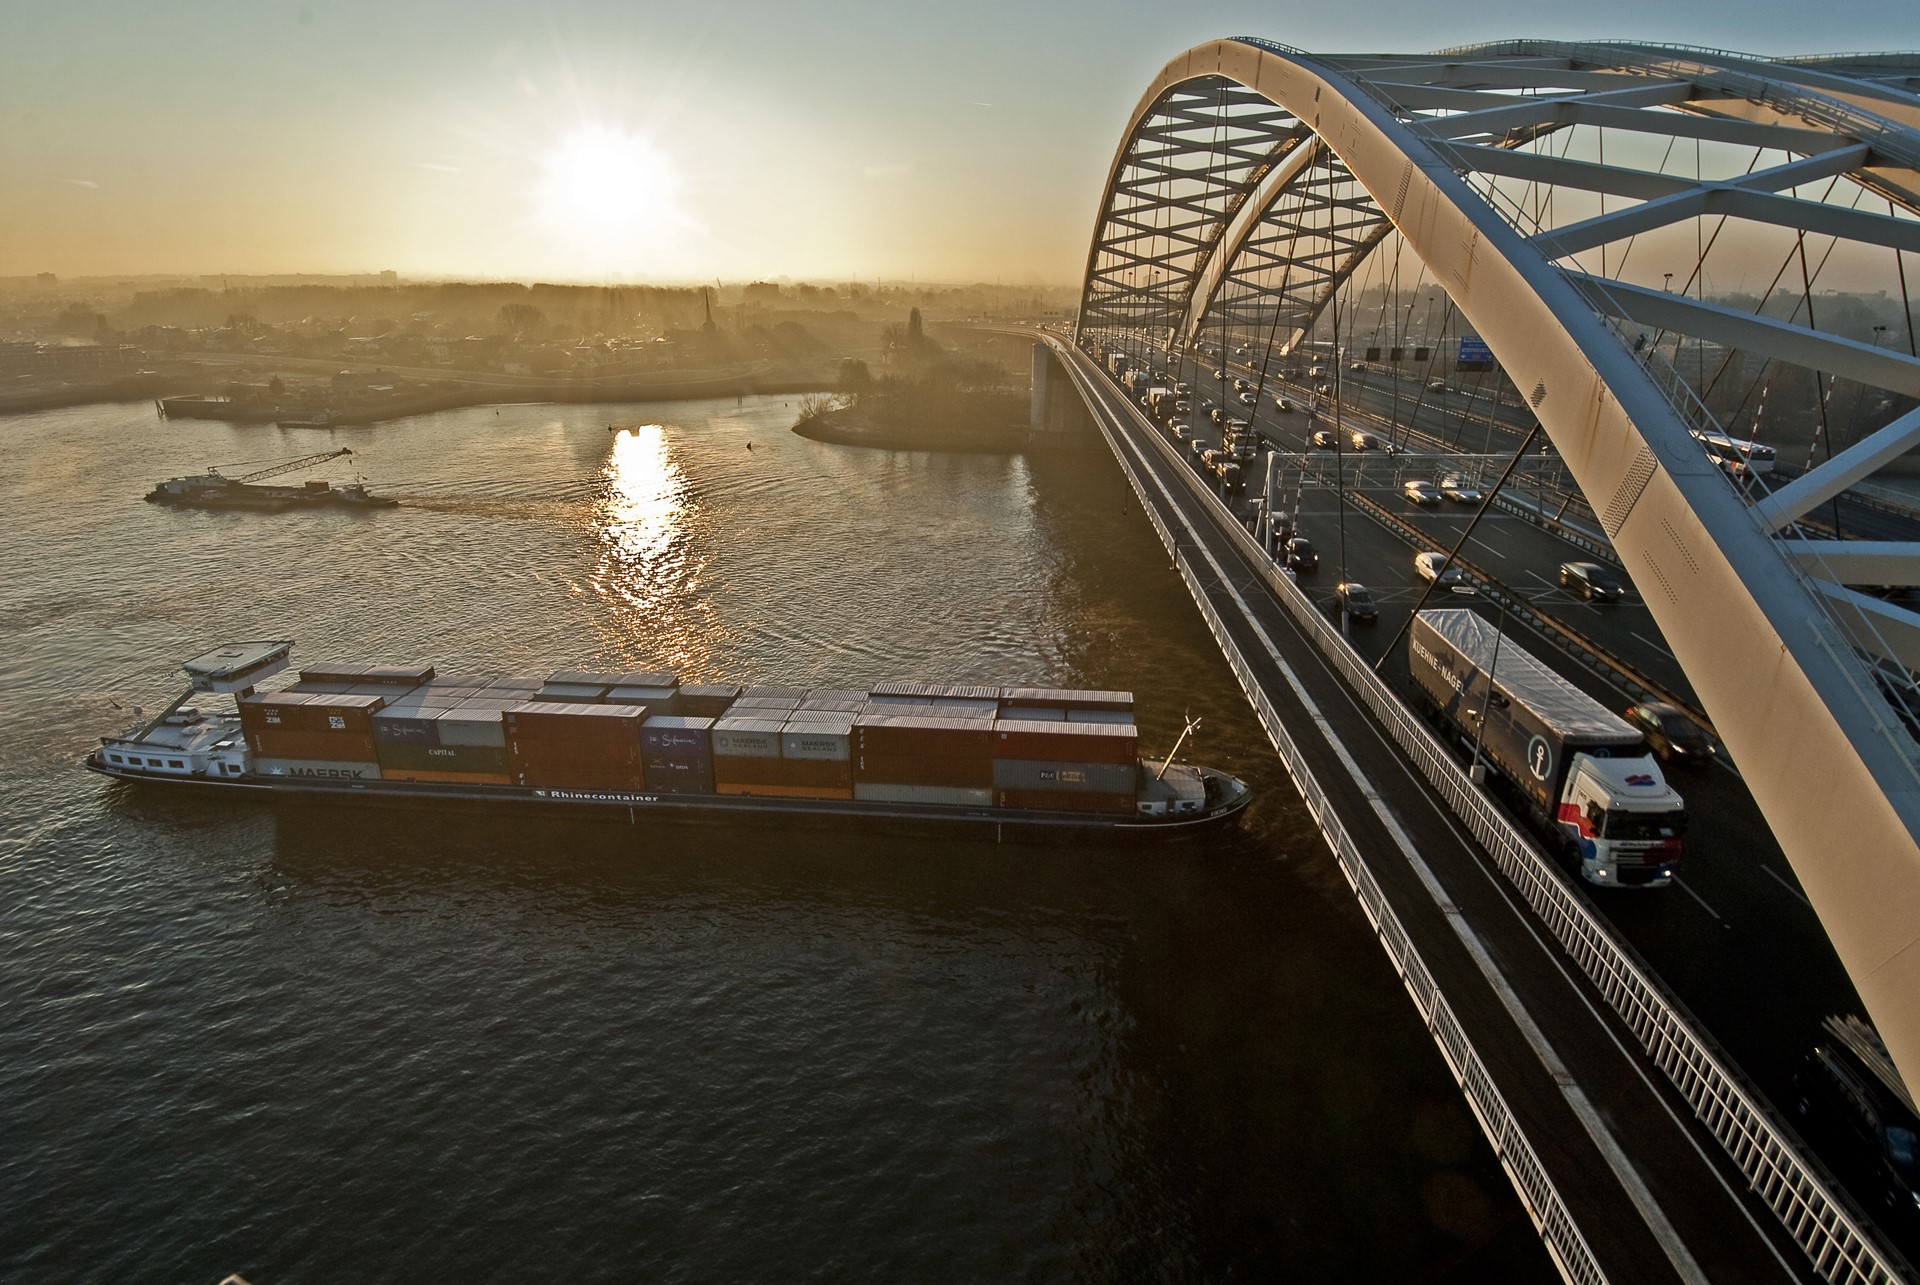 Port-of-Rotterdam-containerbarge-under-bridge-HBR-VRIJ